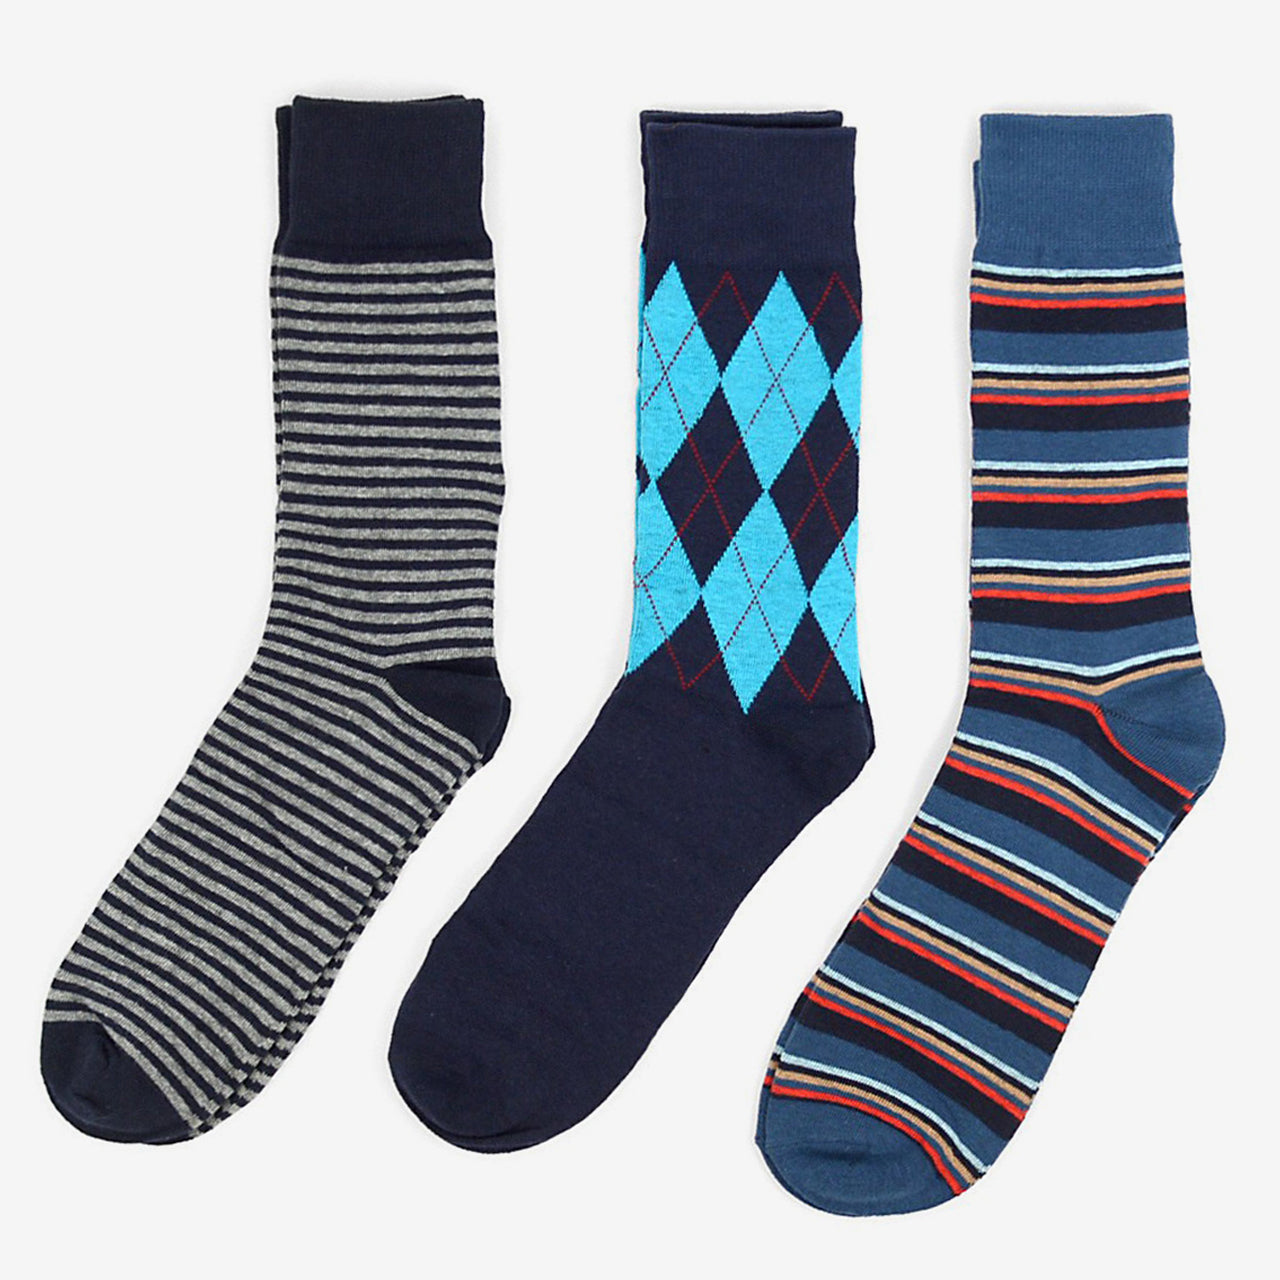 Men's Socks Gift Box, 3 Pairs